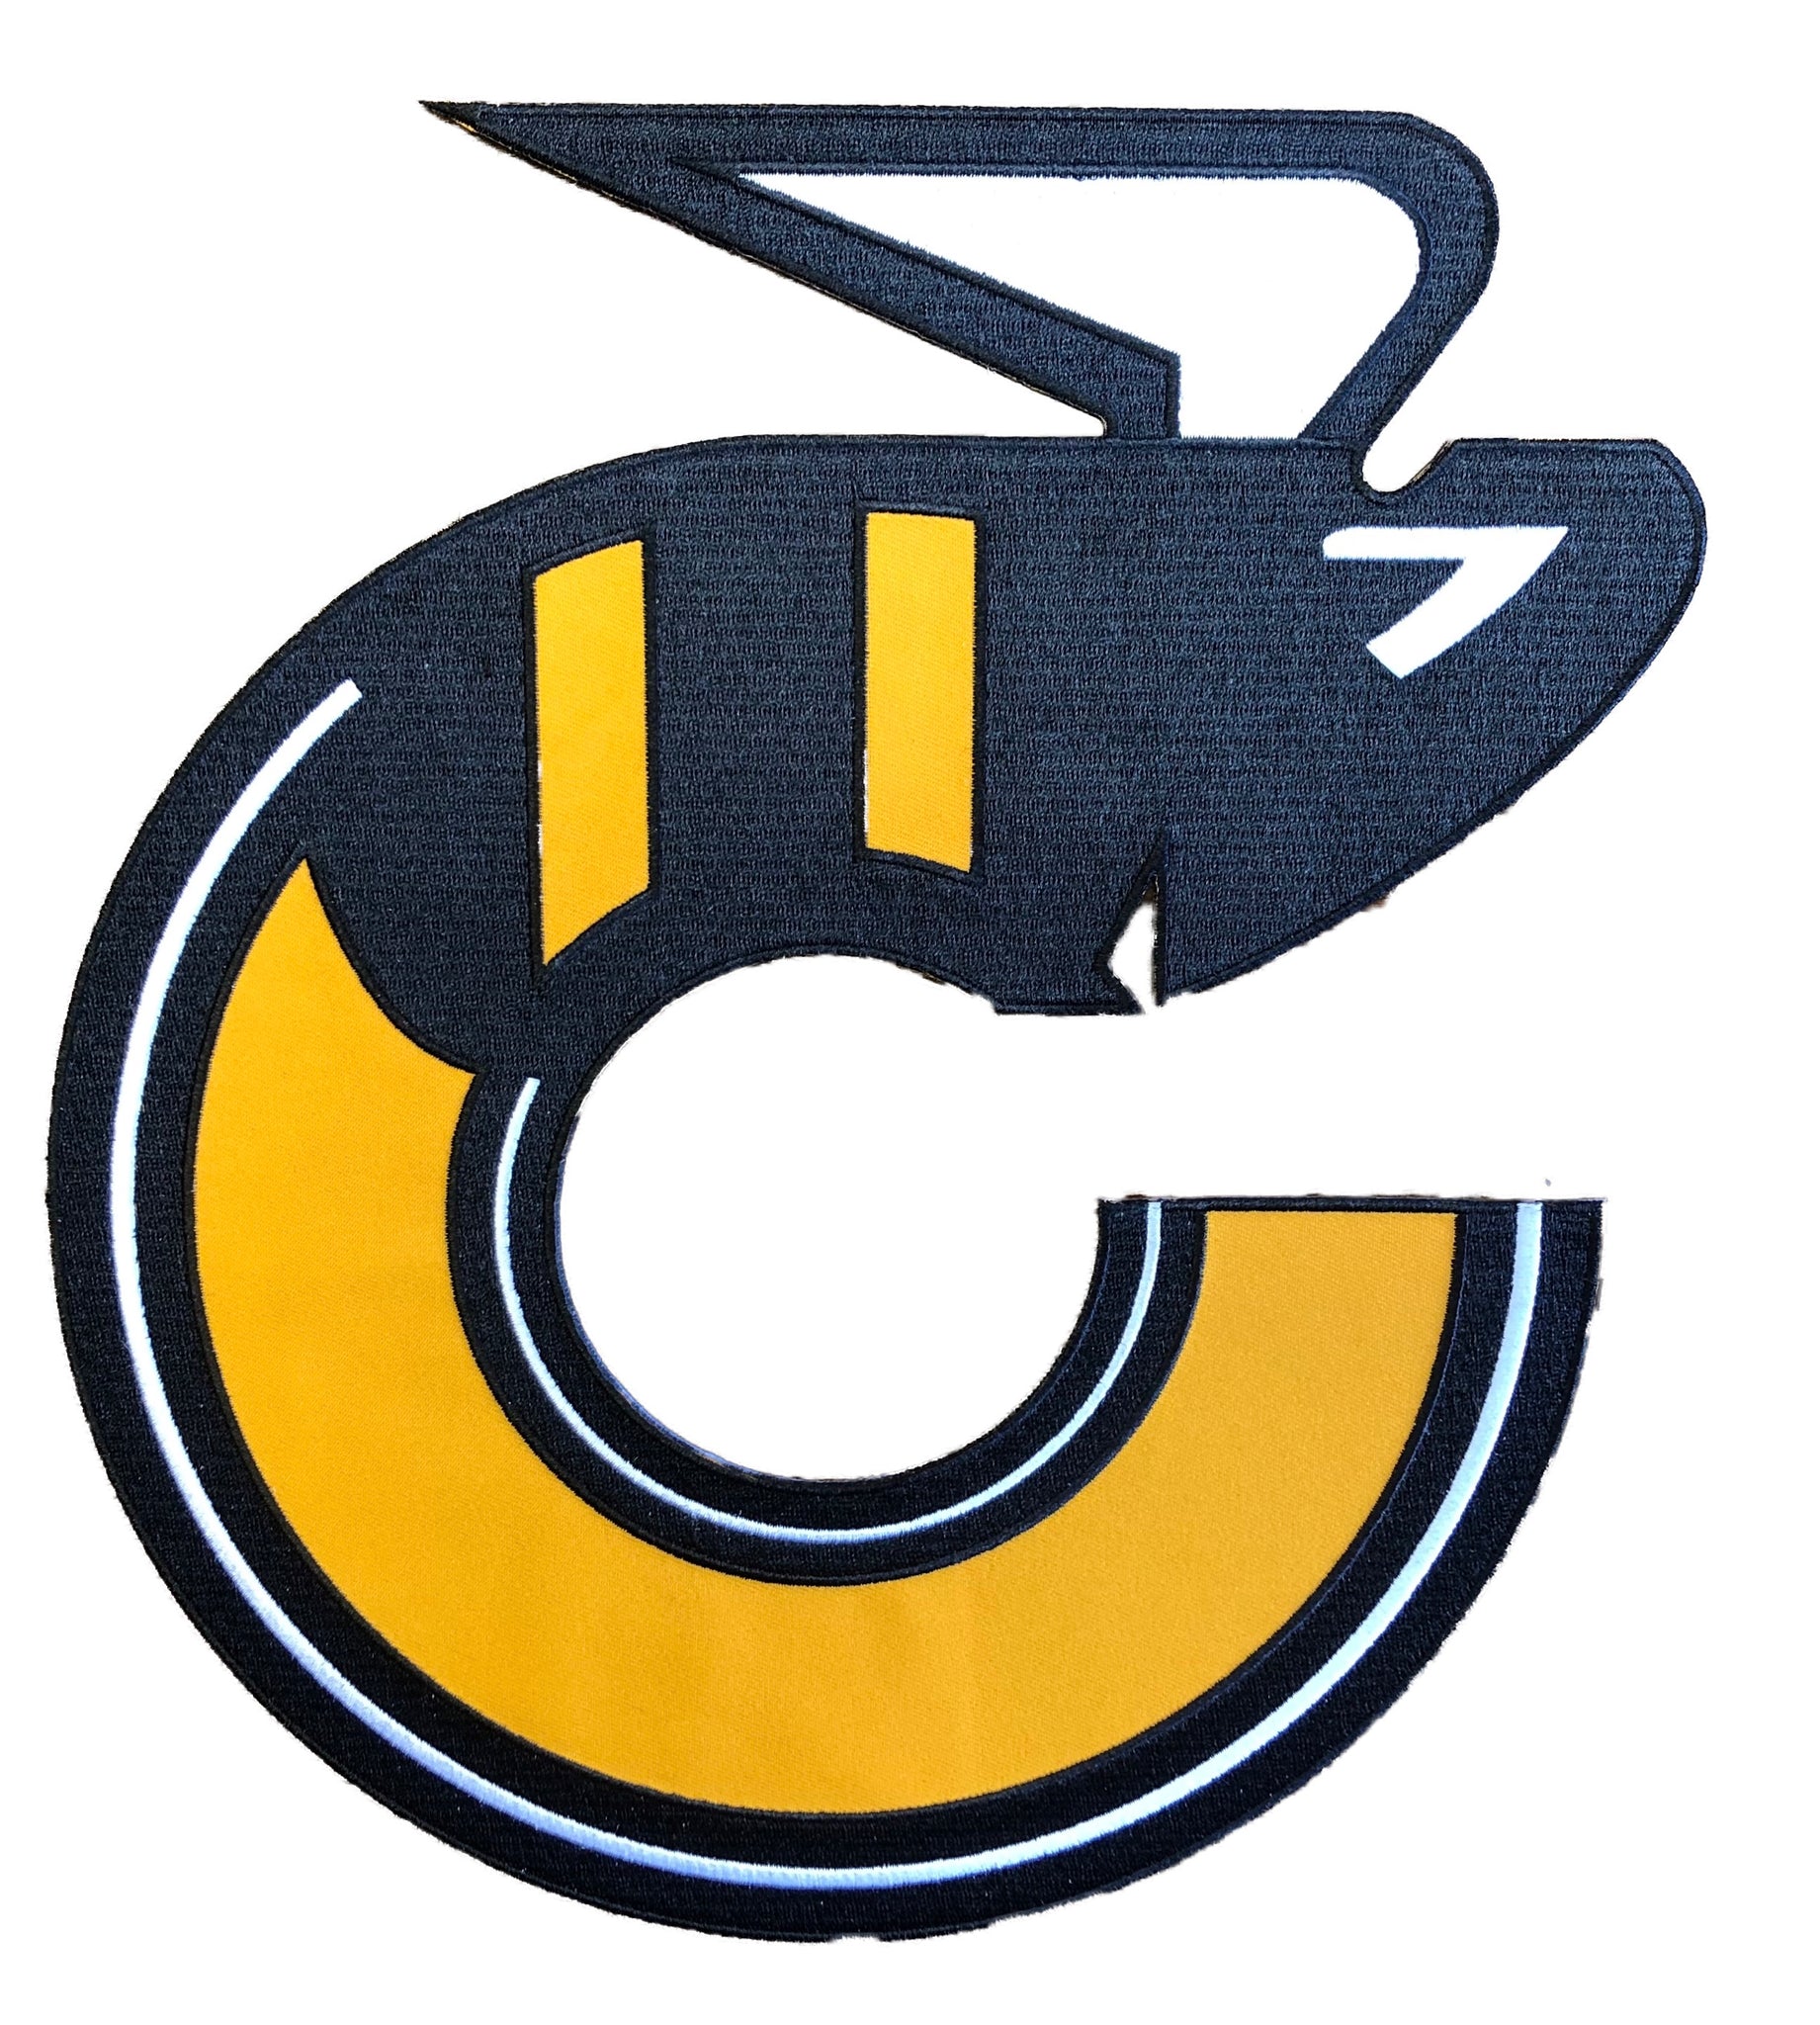 Custom Hockey Jerseys with the Johnny Canuck Twill Logo – Tally